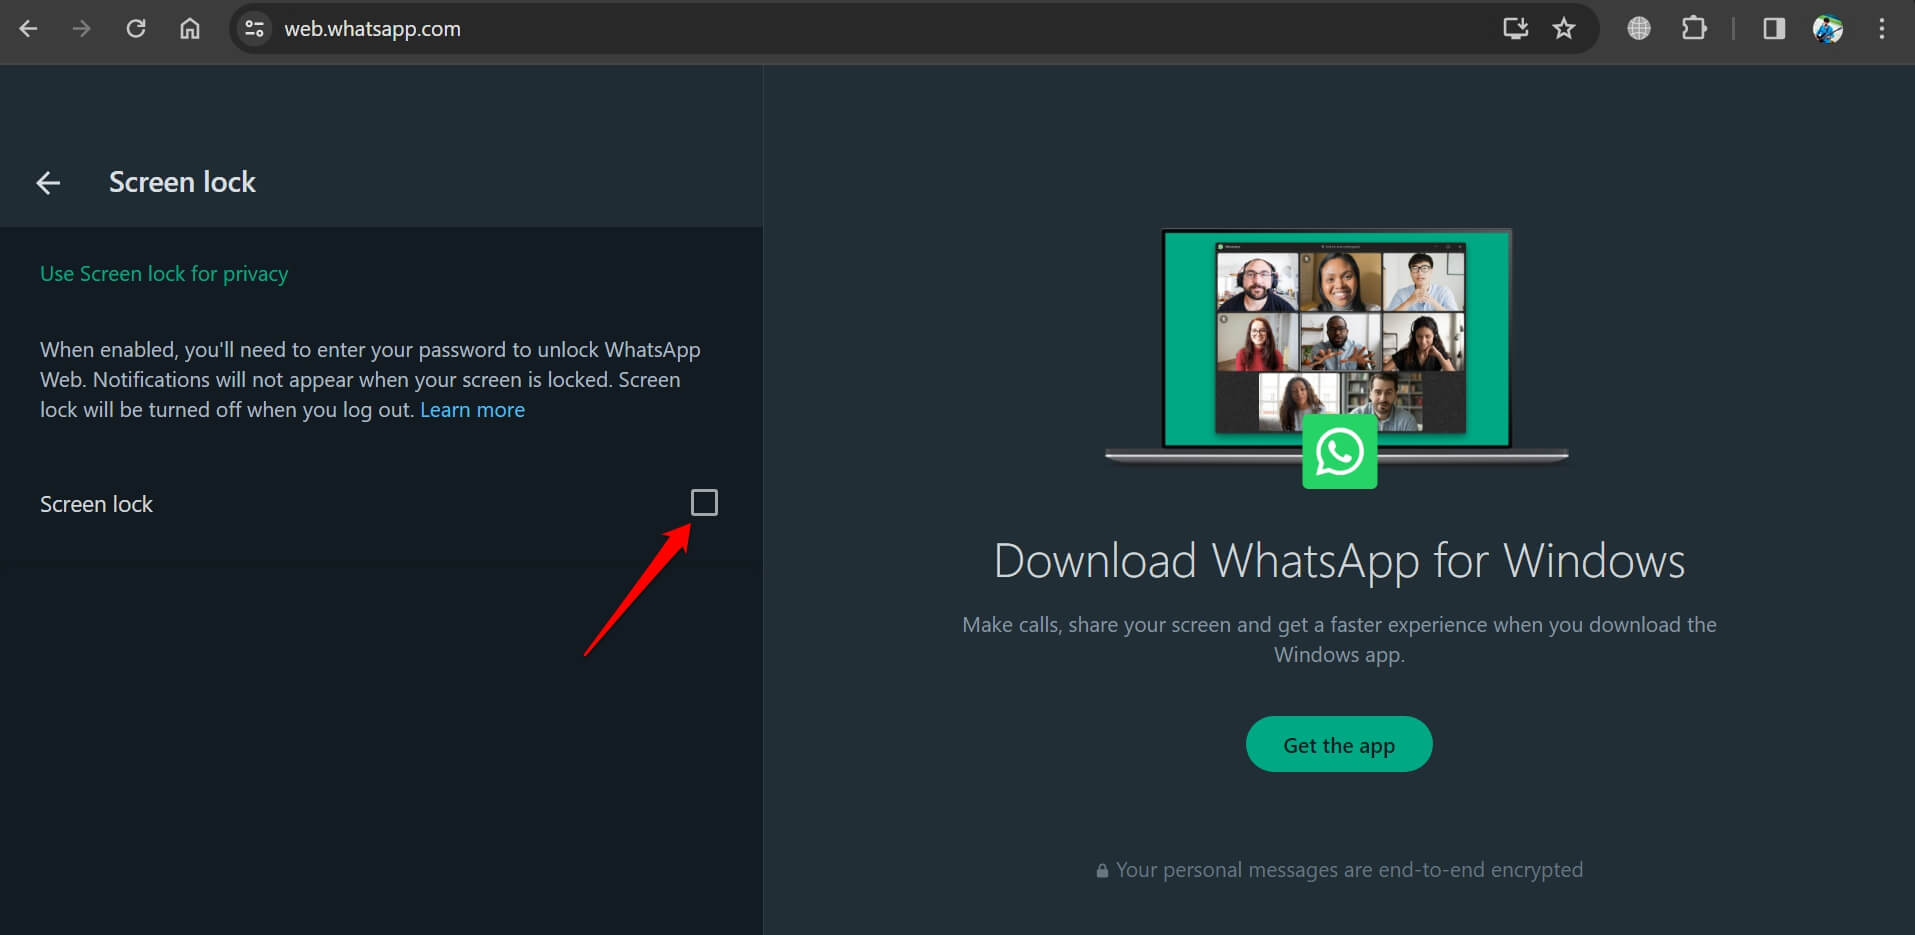 enable screen lock on WhatsApp web